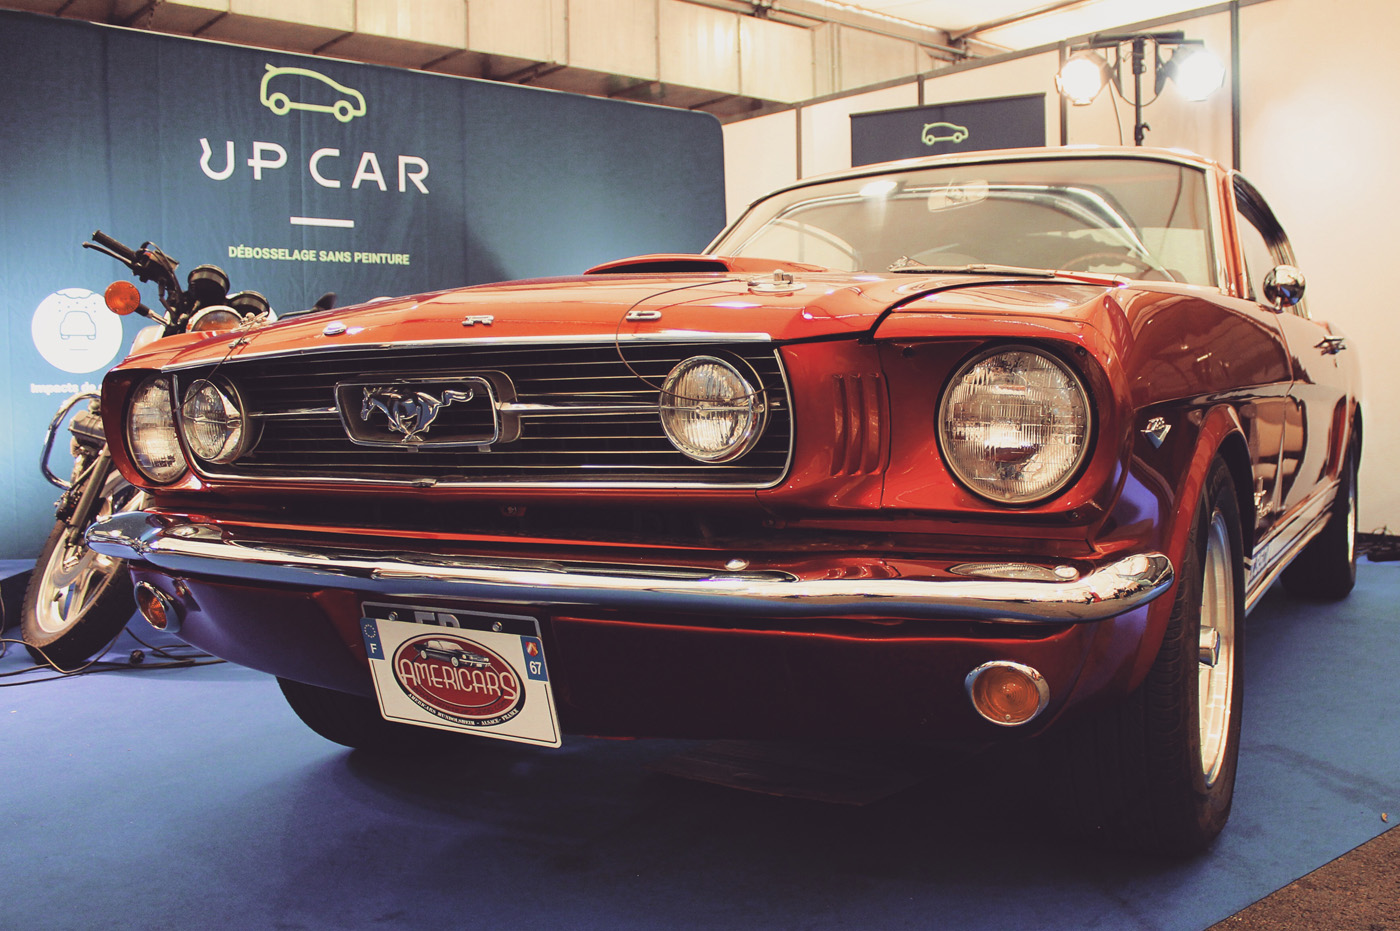 Une des Ford Mustang du salon, mon rêve !